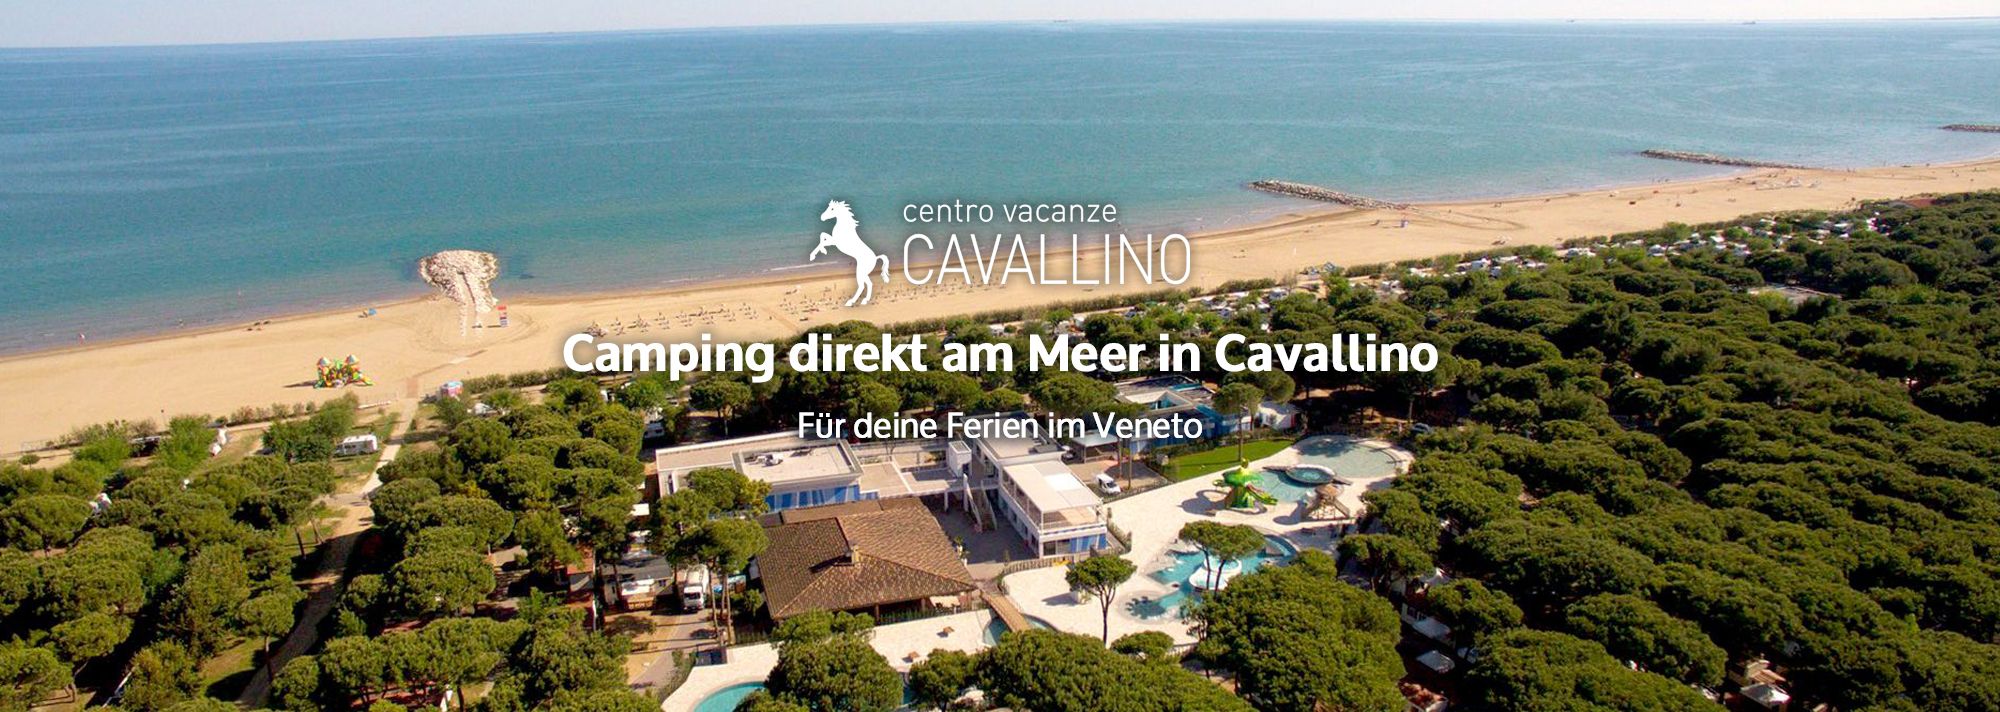 www.campingcavallino.com/de/